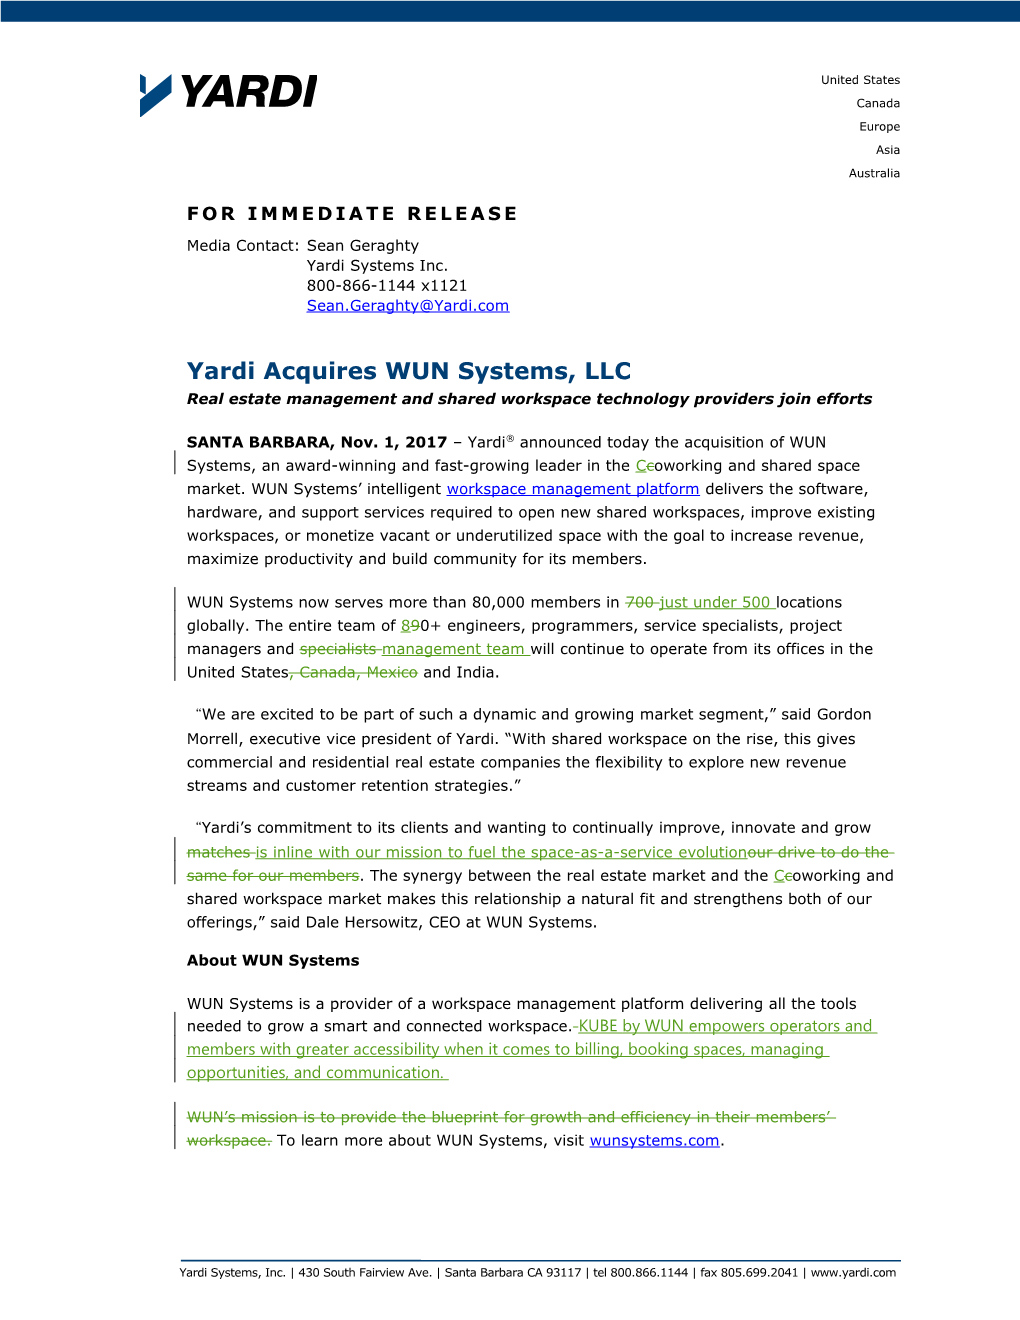 Yardi Acquires WUN Systems, LLC